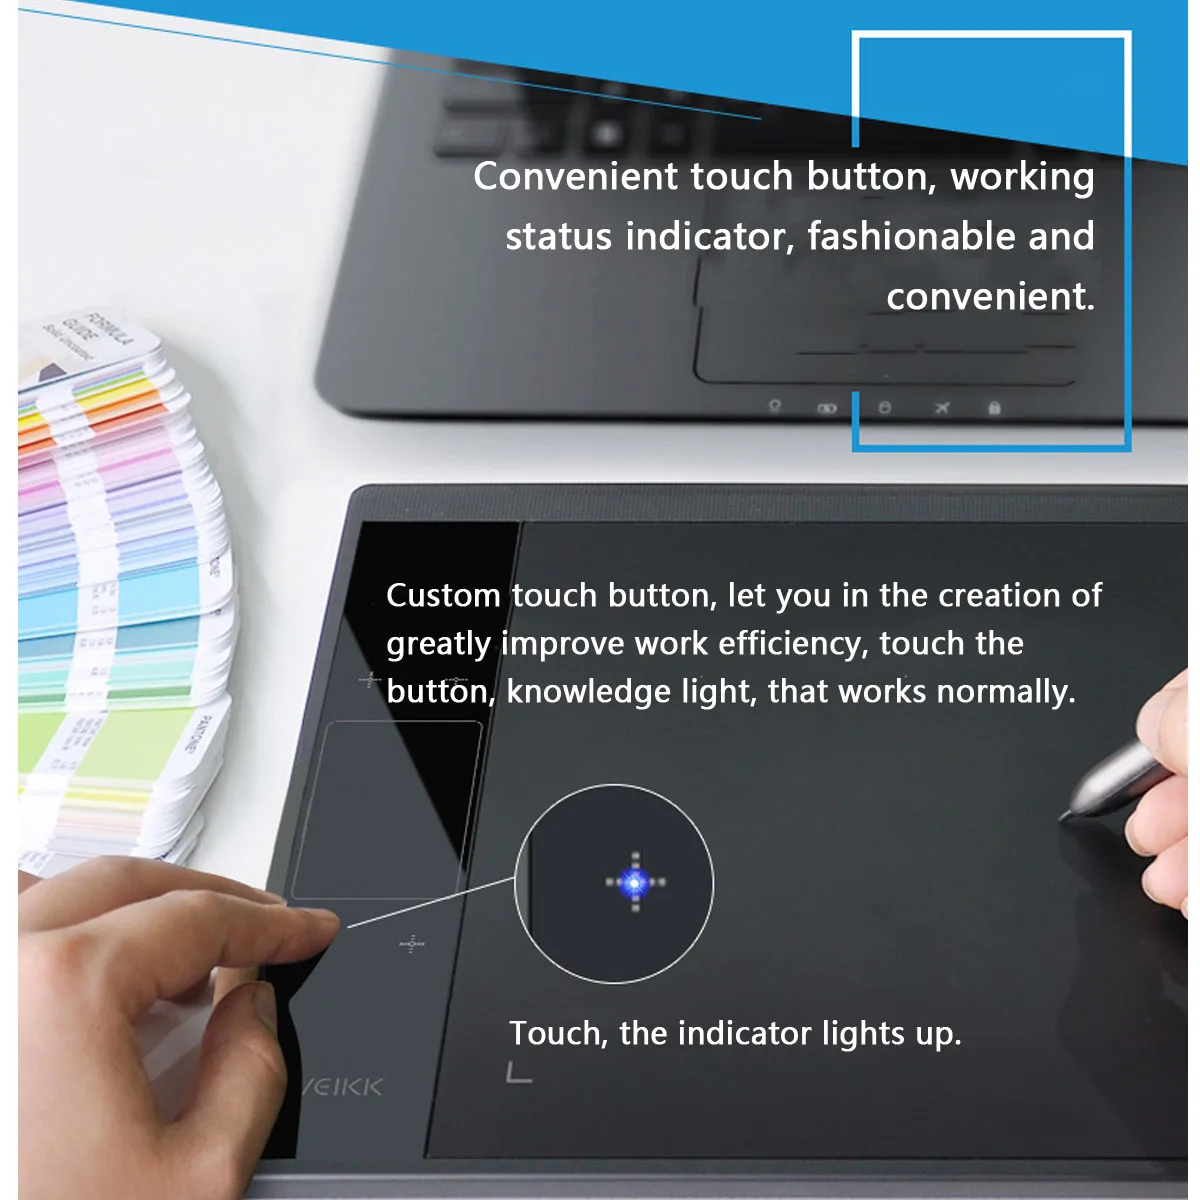 VEIKK A30 Grafike za Risanje Tableta z 8192 Ravni 10x6 cm Prenosni Digitalni Risalna deska Za Online Poučevanja, Učenja